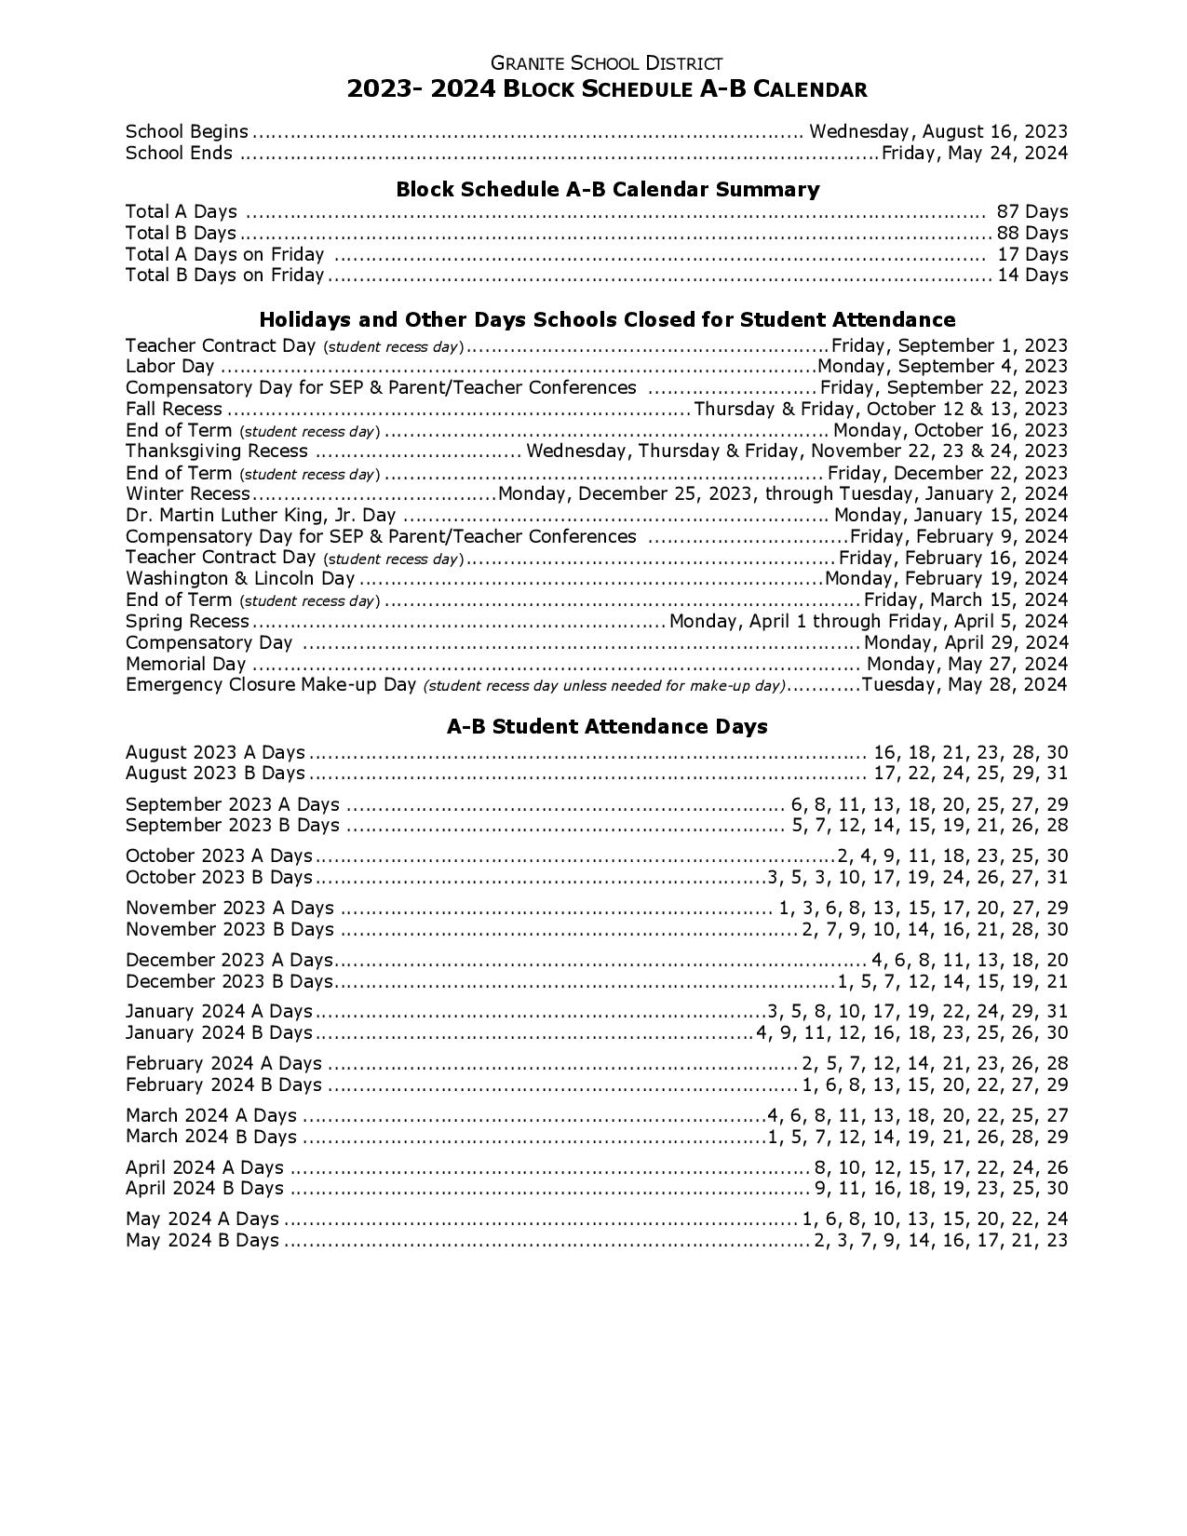 Granite School District Calendar 20232024 in PDF School Calendar Info